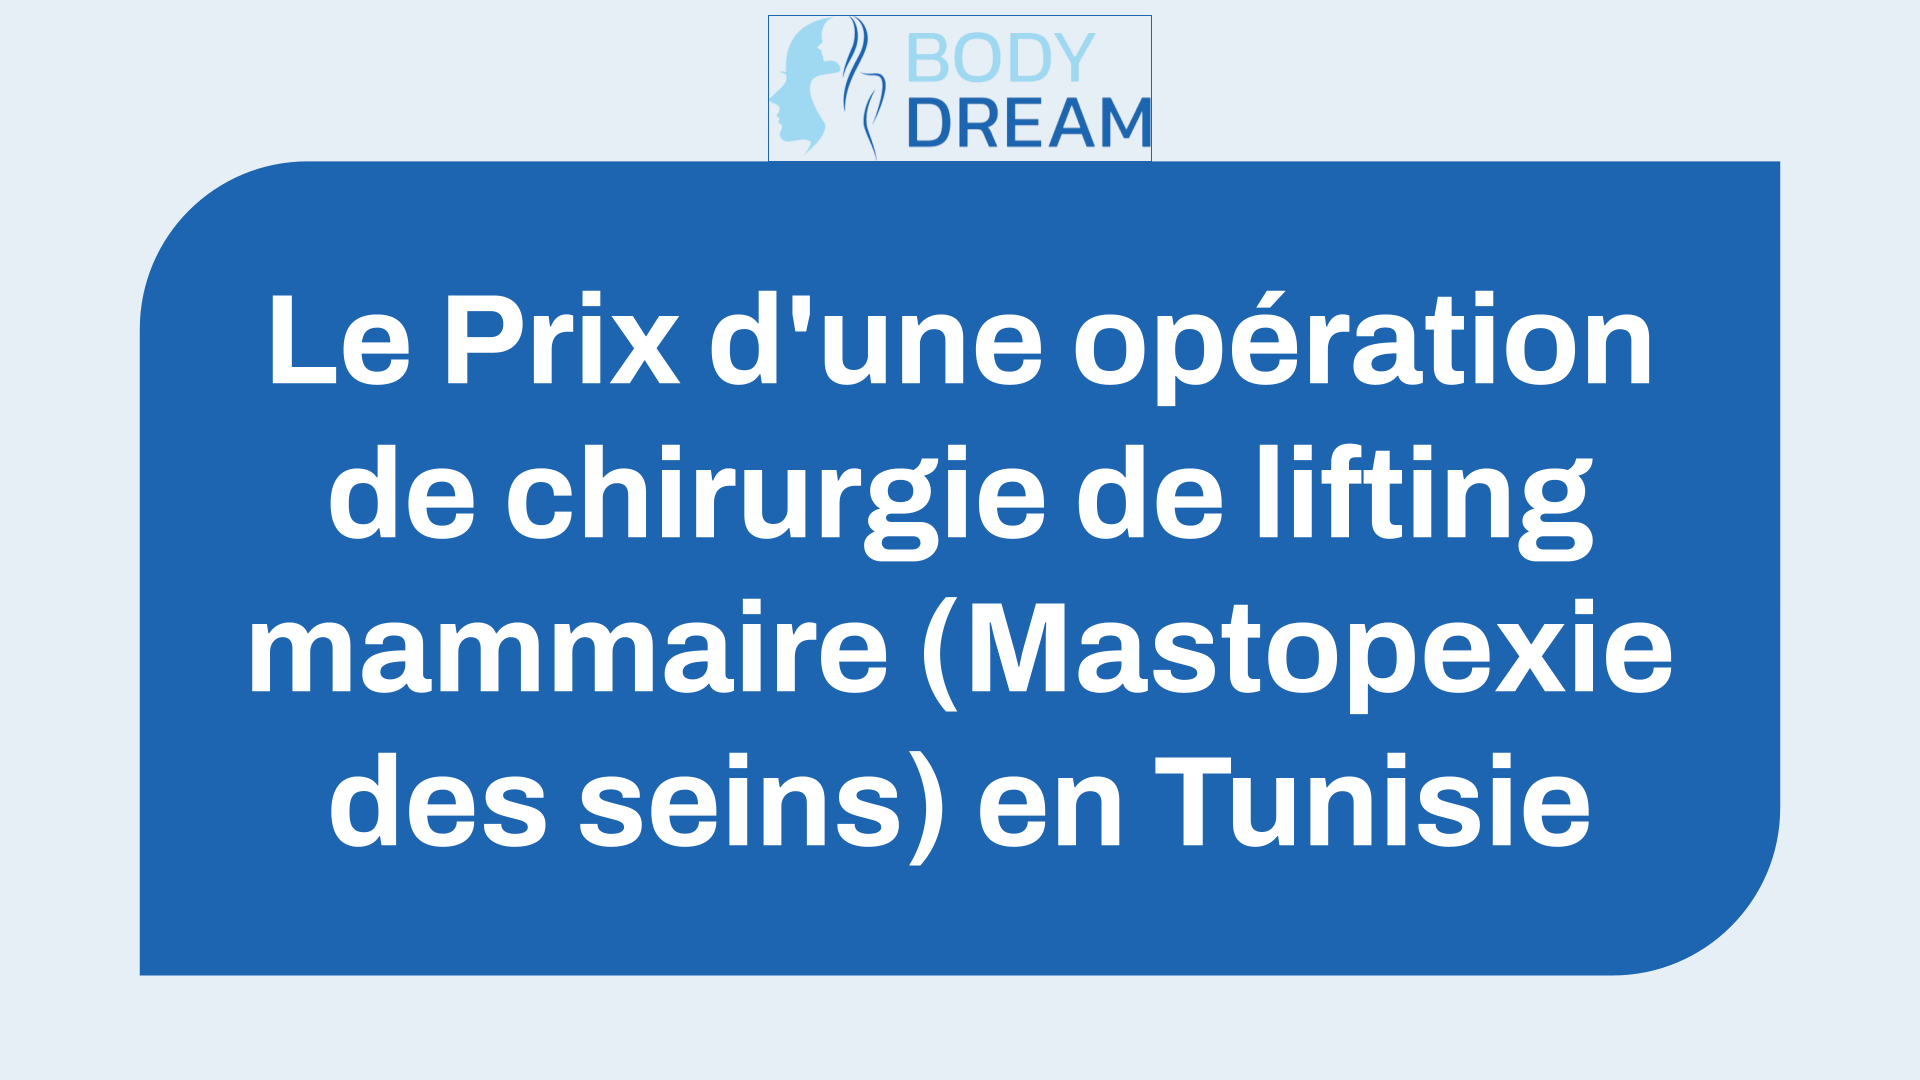 Les 6 Prix et Tarifs d’une opération de lifting mammaire en Tunisie !